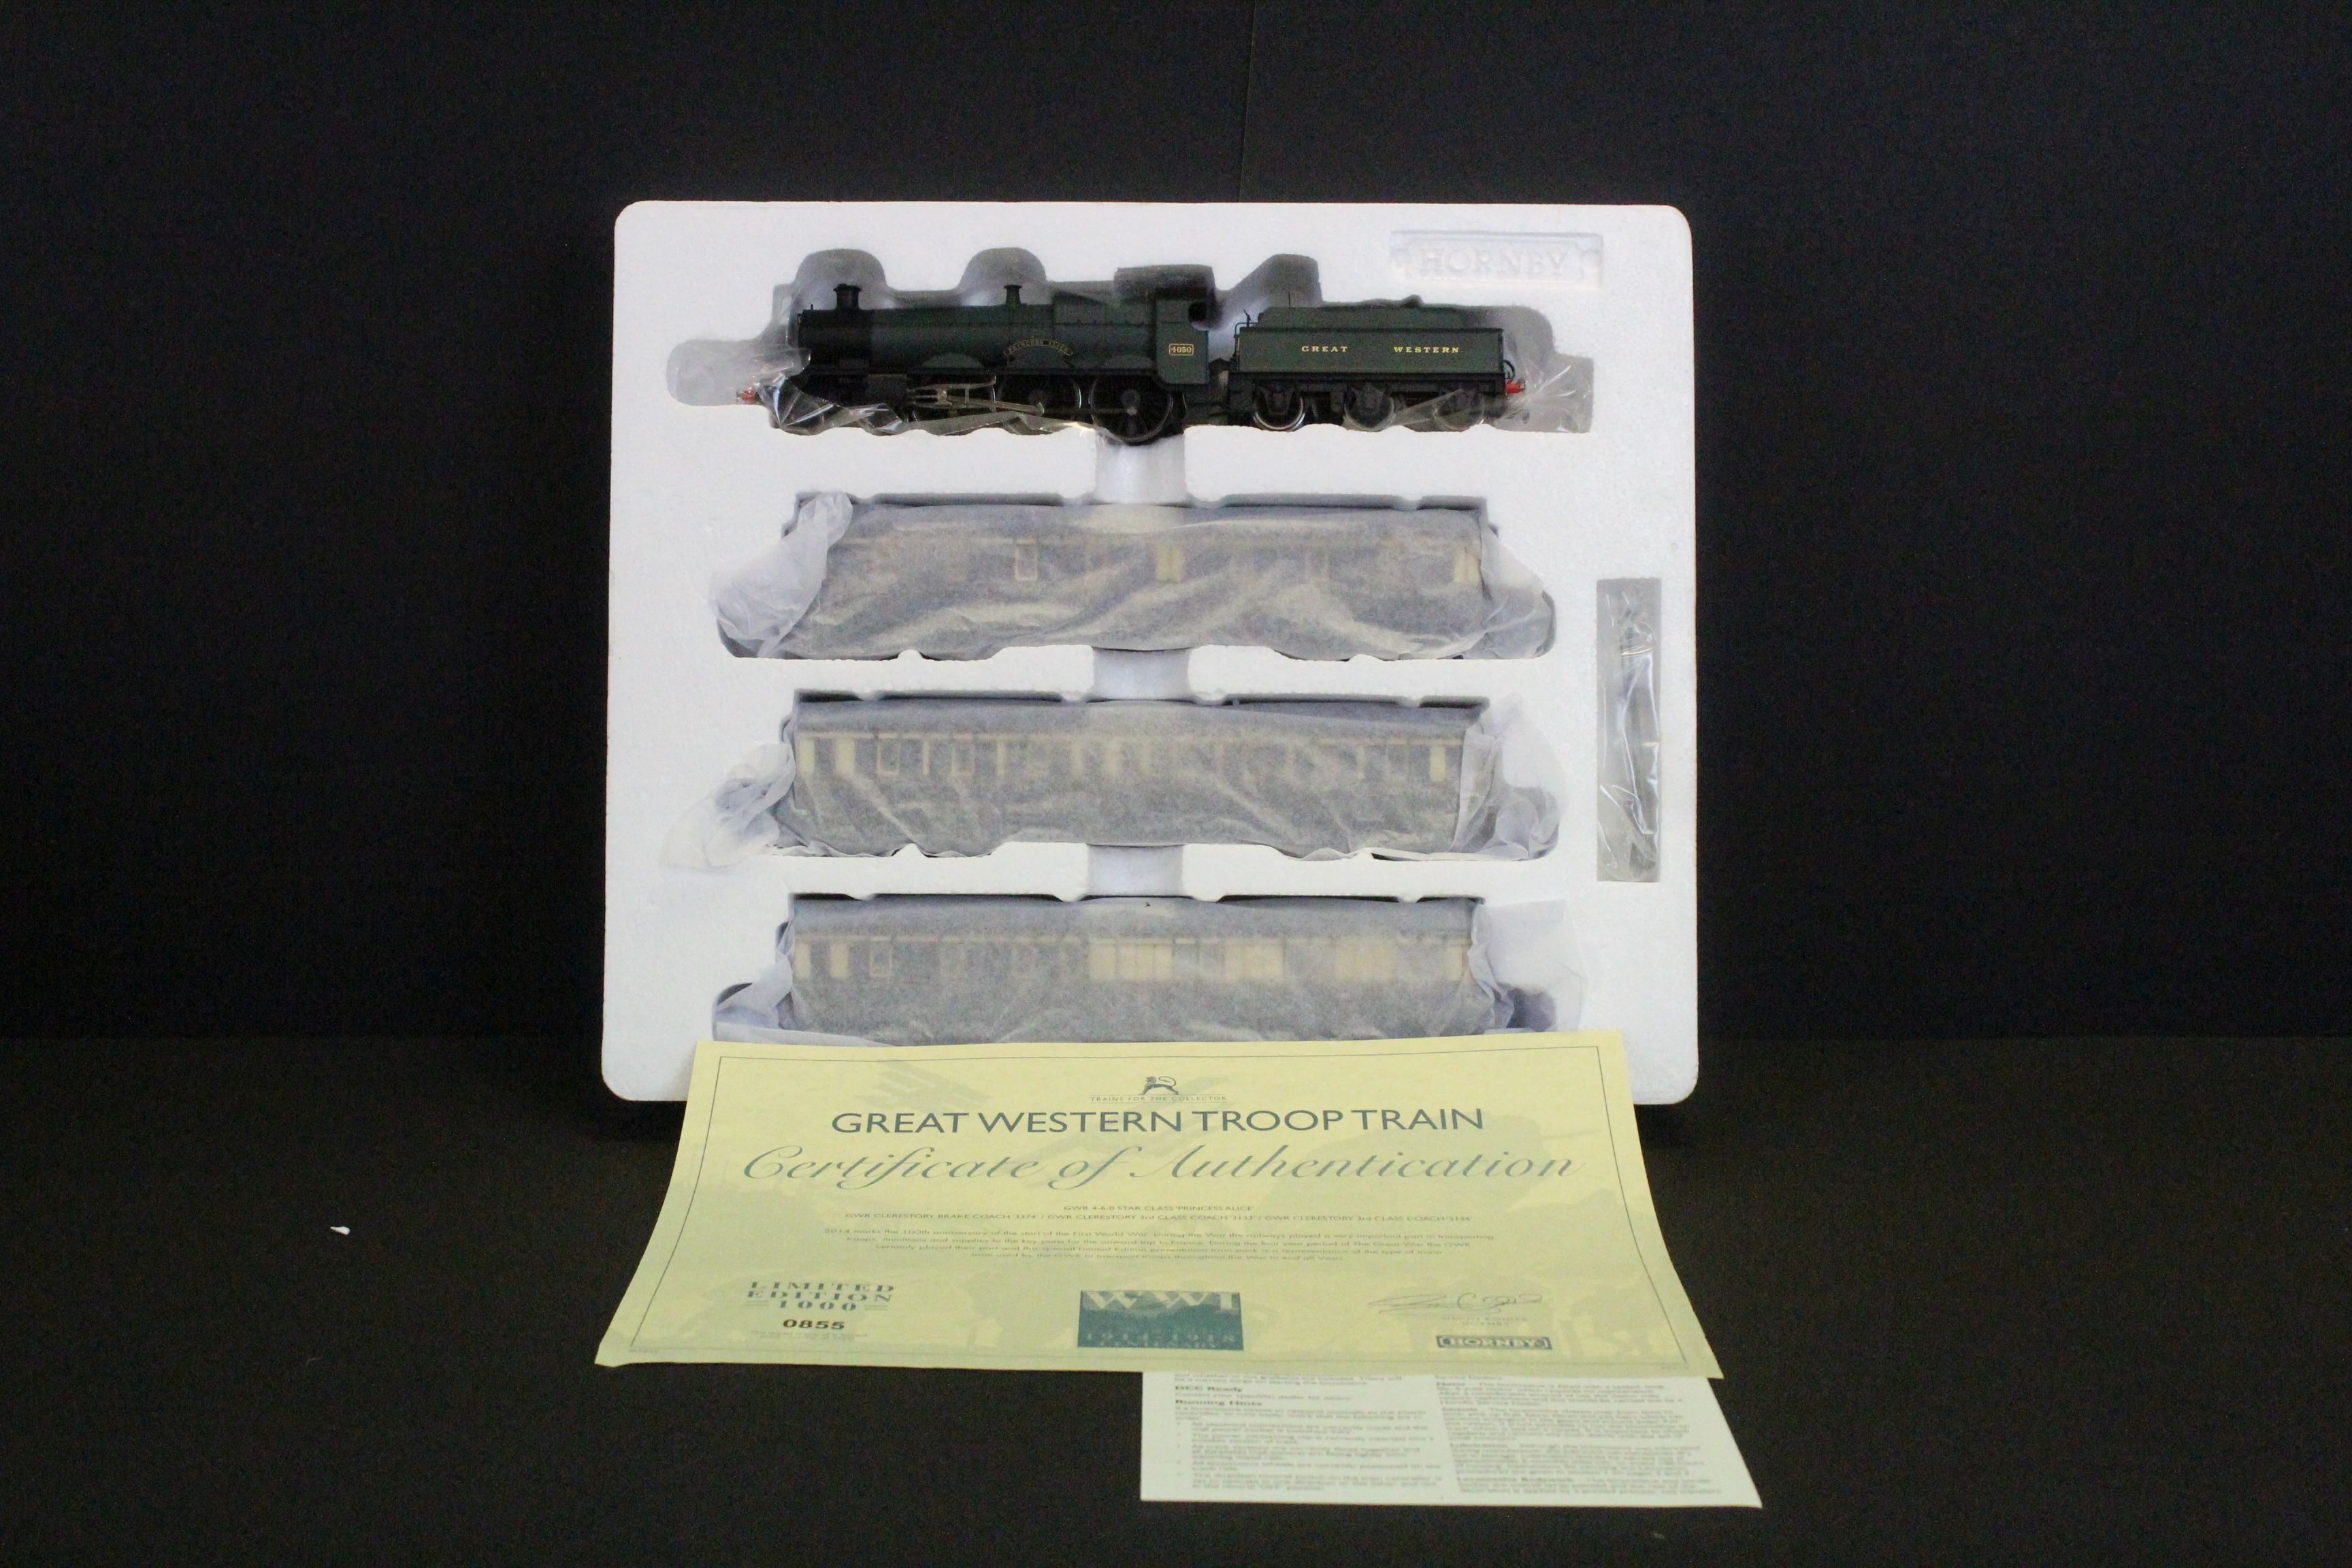 Boxed ltd edn Hornby OO gauge R3219 Great Western Troop Train Pack, complete with certificate - Image 3 of 6